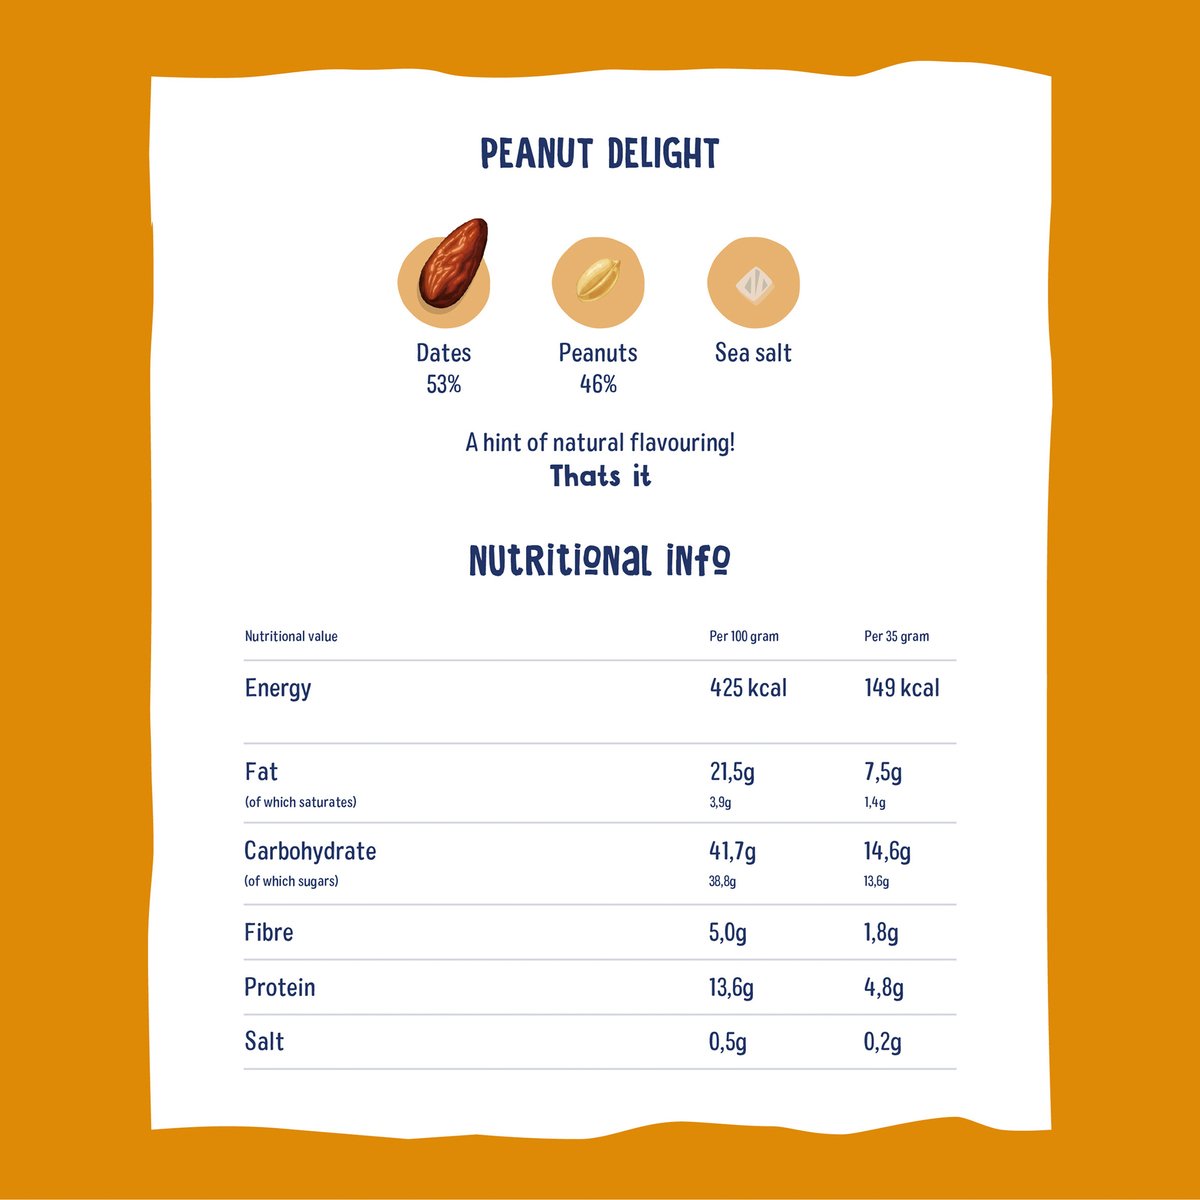 Nakd Peanut Delight Bar 35 g